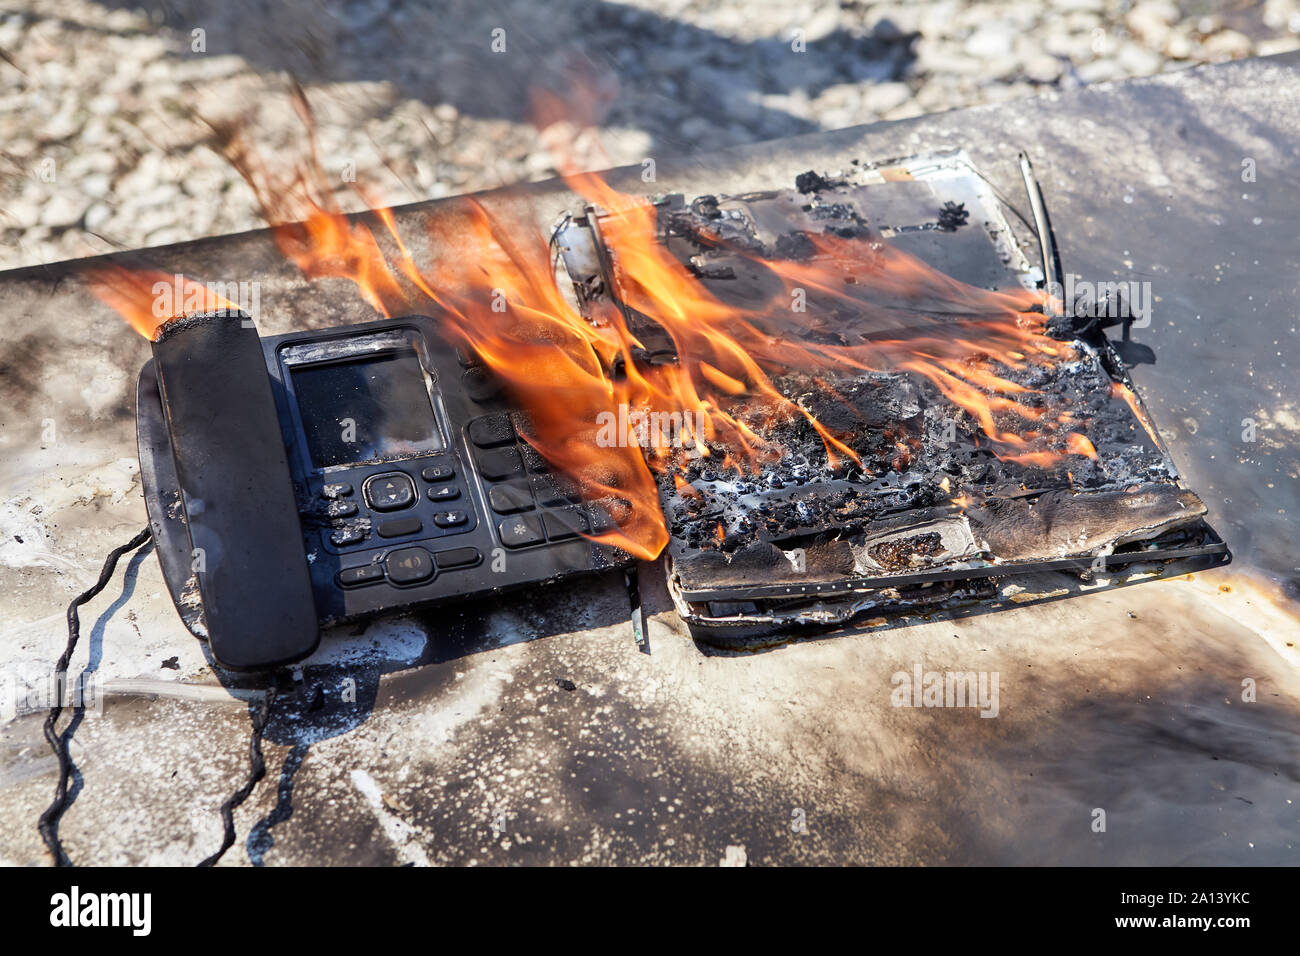 Un incendie dans le bureau, une flamme détruit un téléphone filaire et d'un  ordinateur portable, un bureau 24 enflammé. Un téléphone fixe burns dans un  bureau d'incendie Photo Stock - Alamy